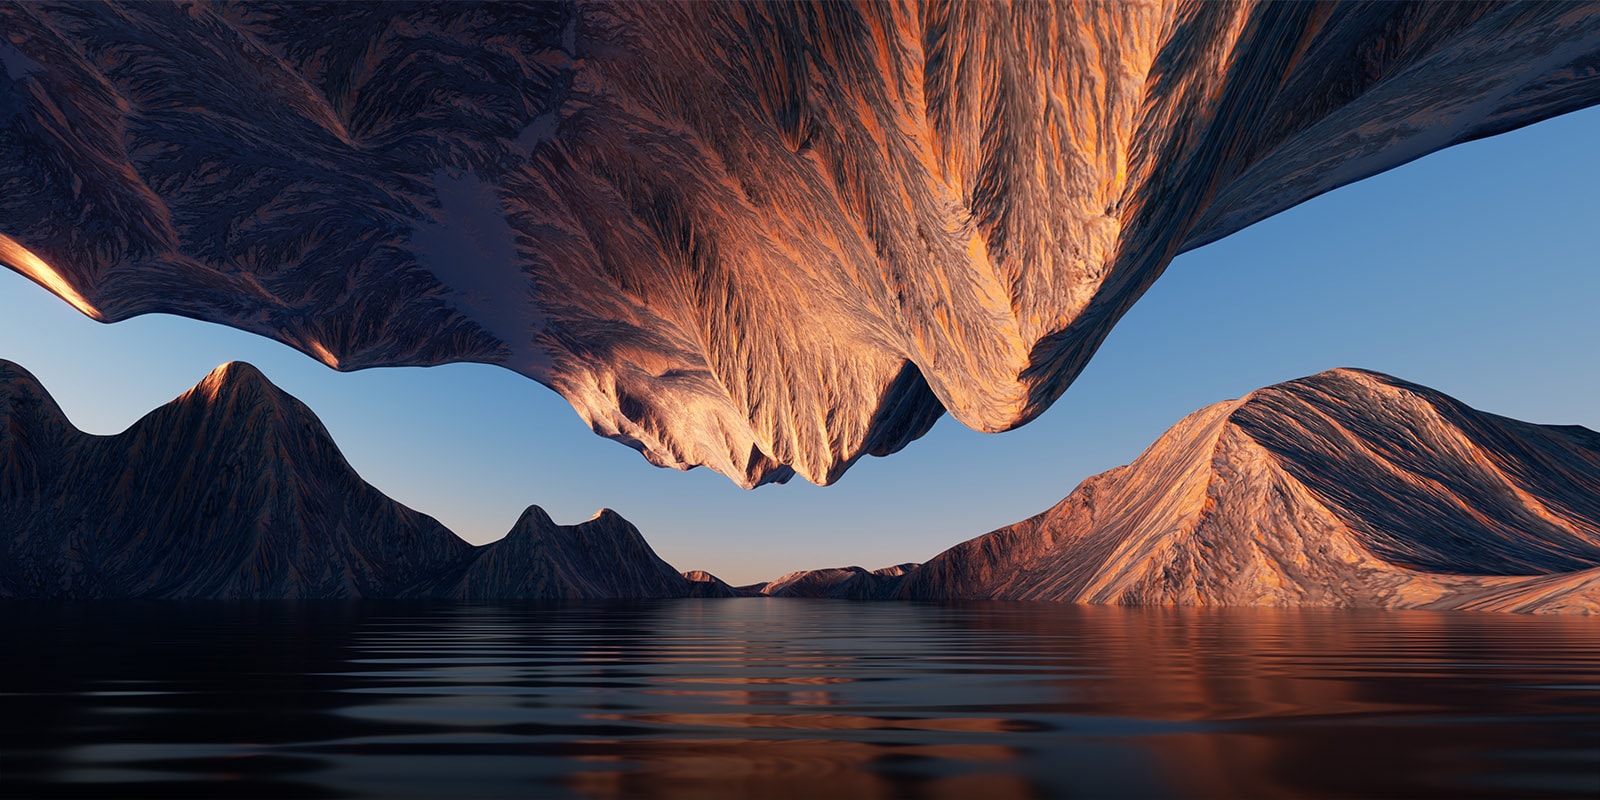 Εικόνα της φύσης με βραχώδη βουνά που αντικρίζουν το ένα το άλλο από πάνω, και από κάτω φαίνεται η αντίθεση και οι λεπτομέρειες.